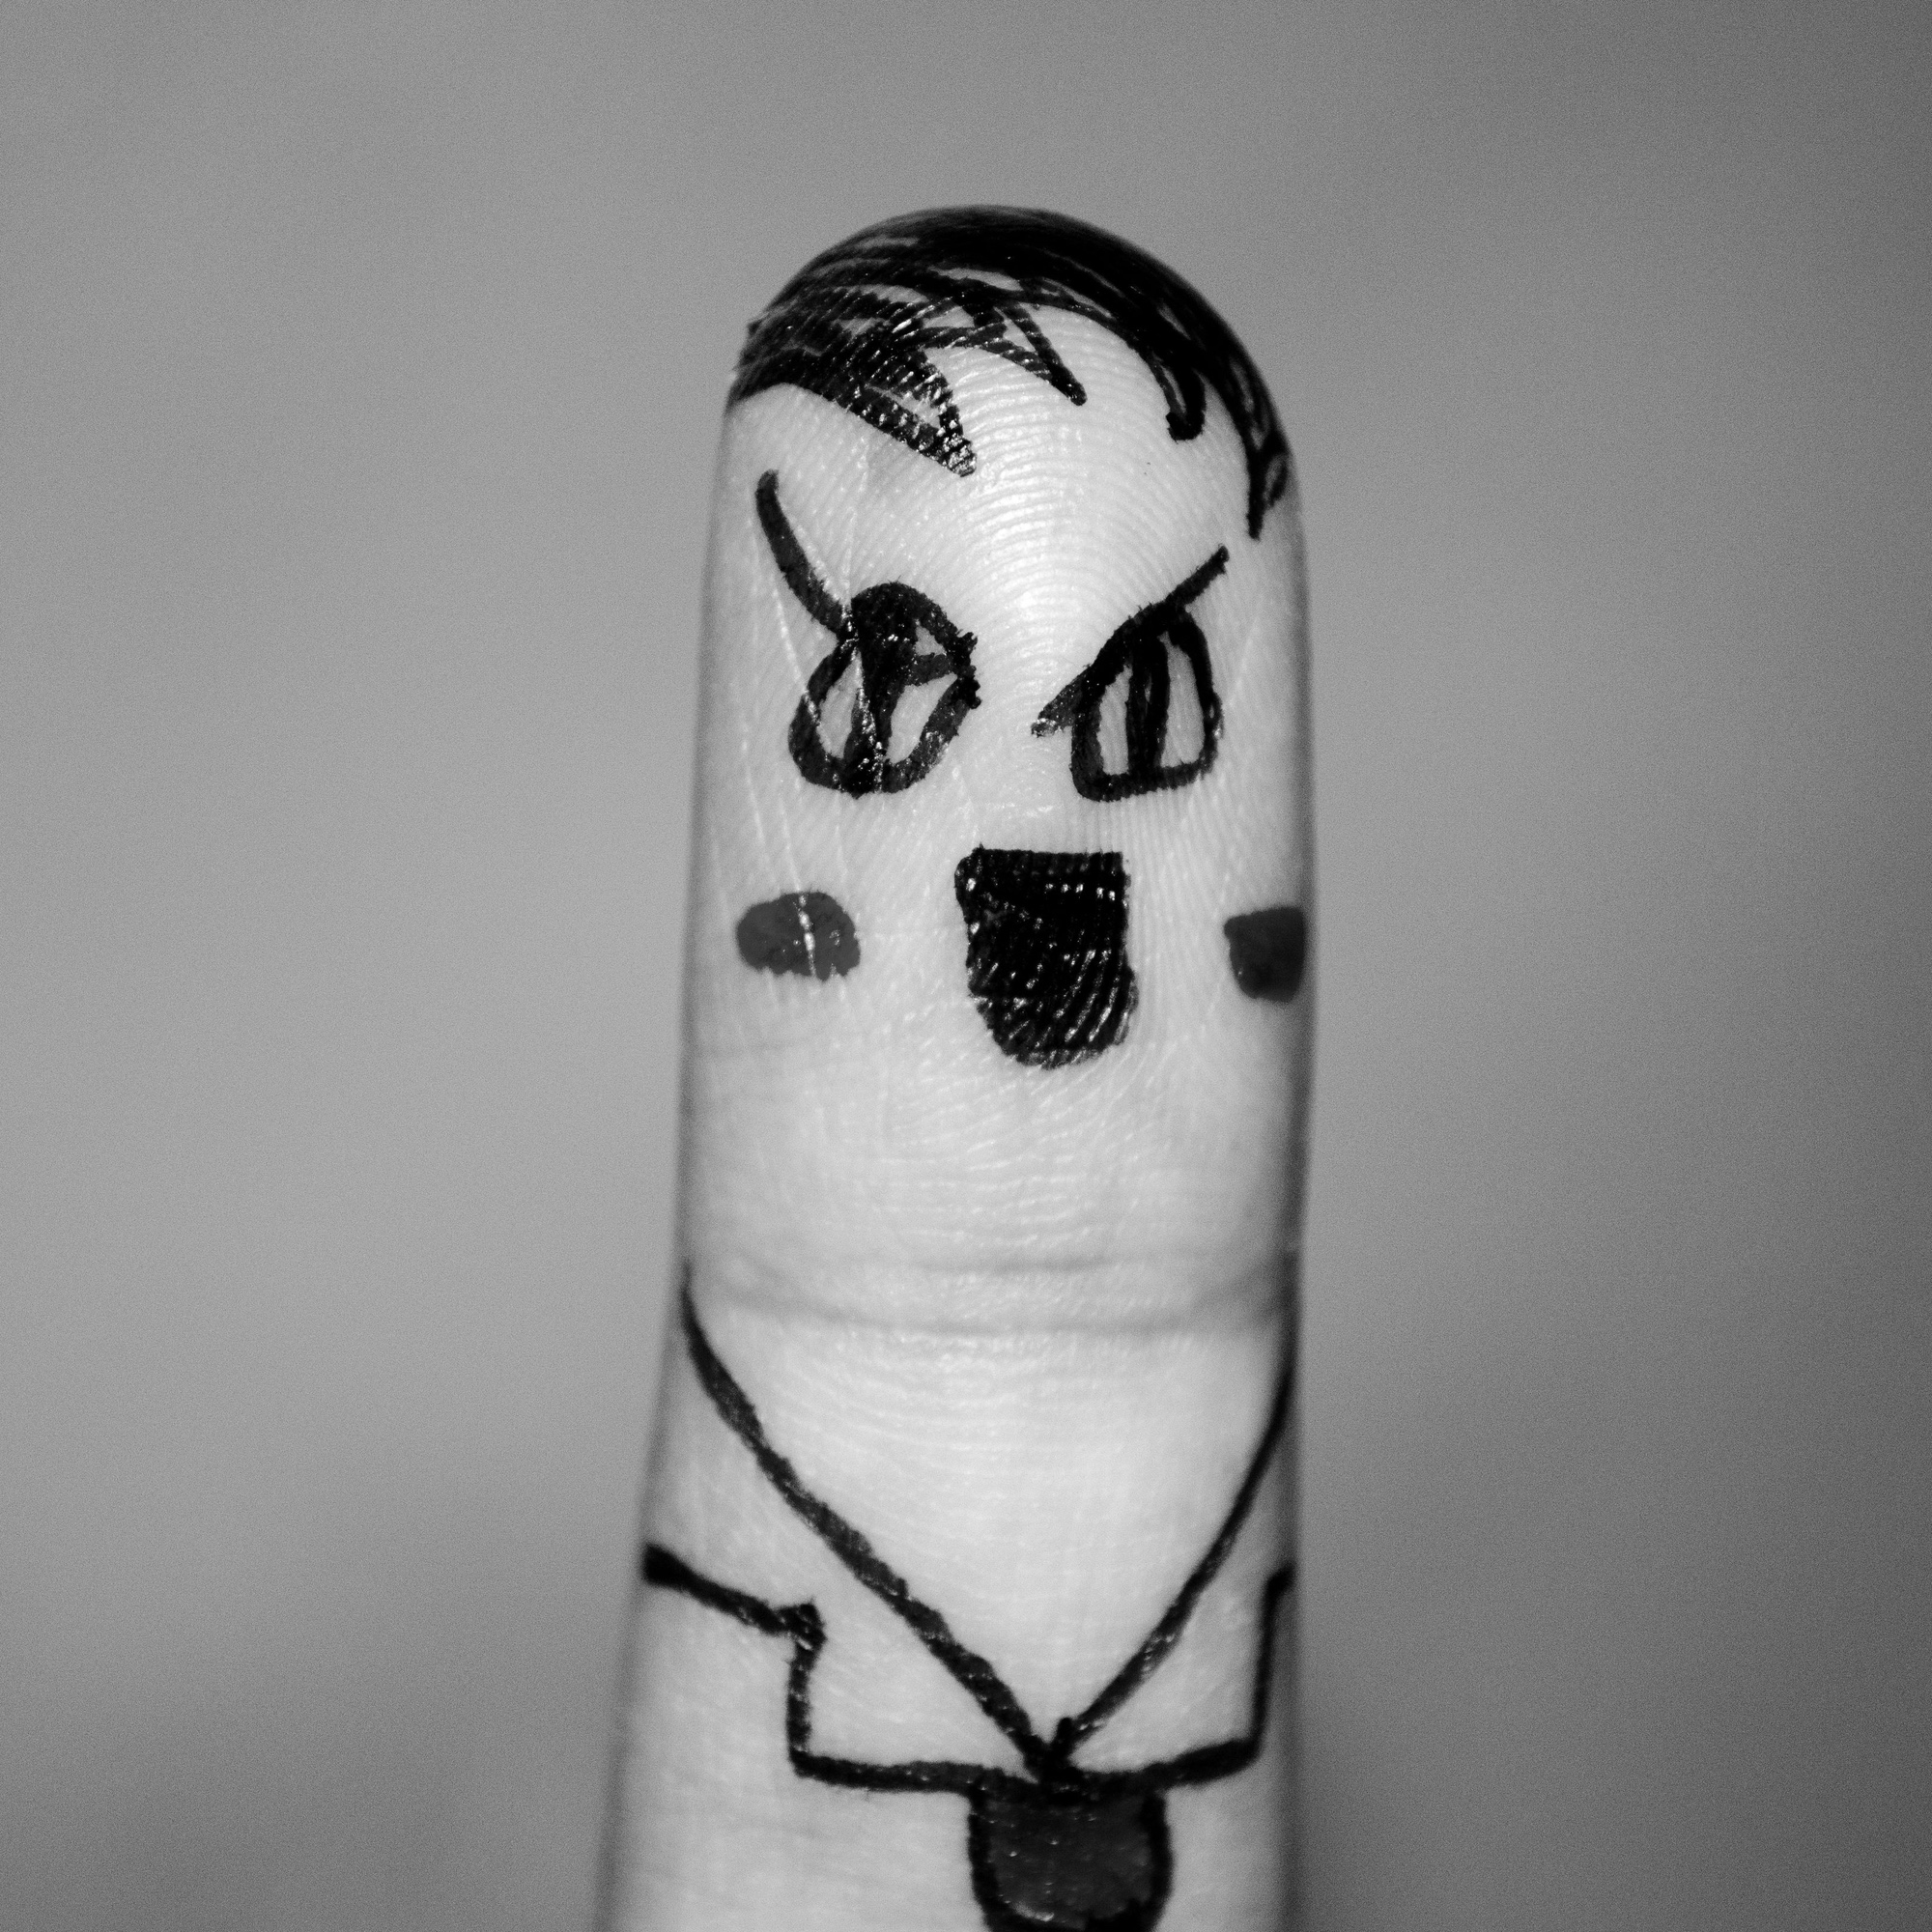 Foto: Finger, der als Adolf Hitler bemalt ist